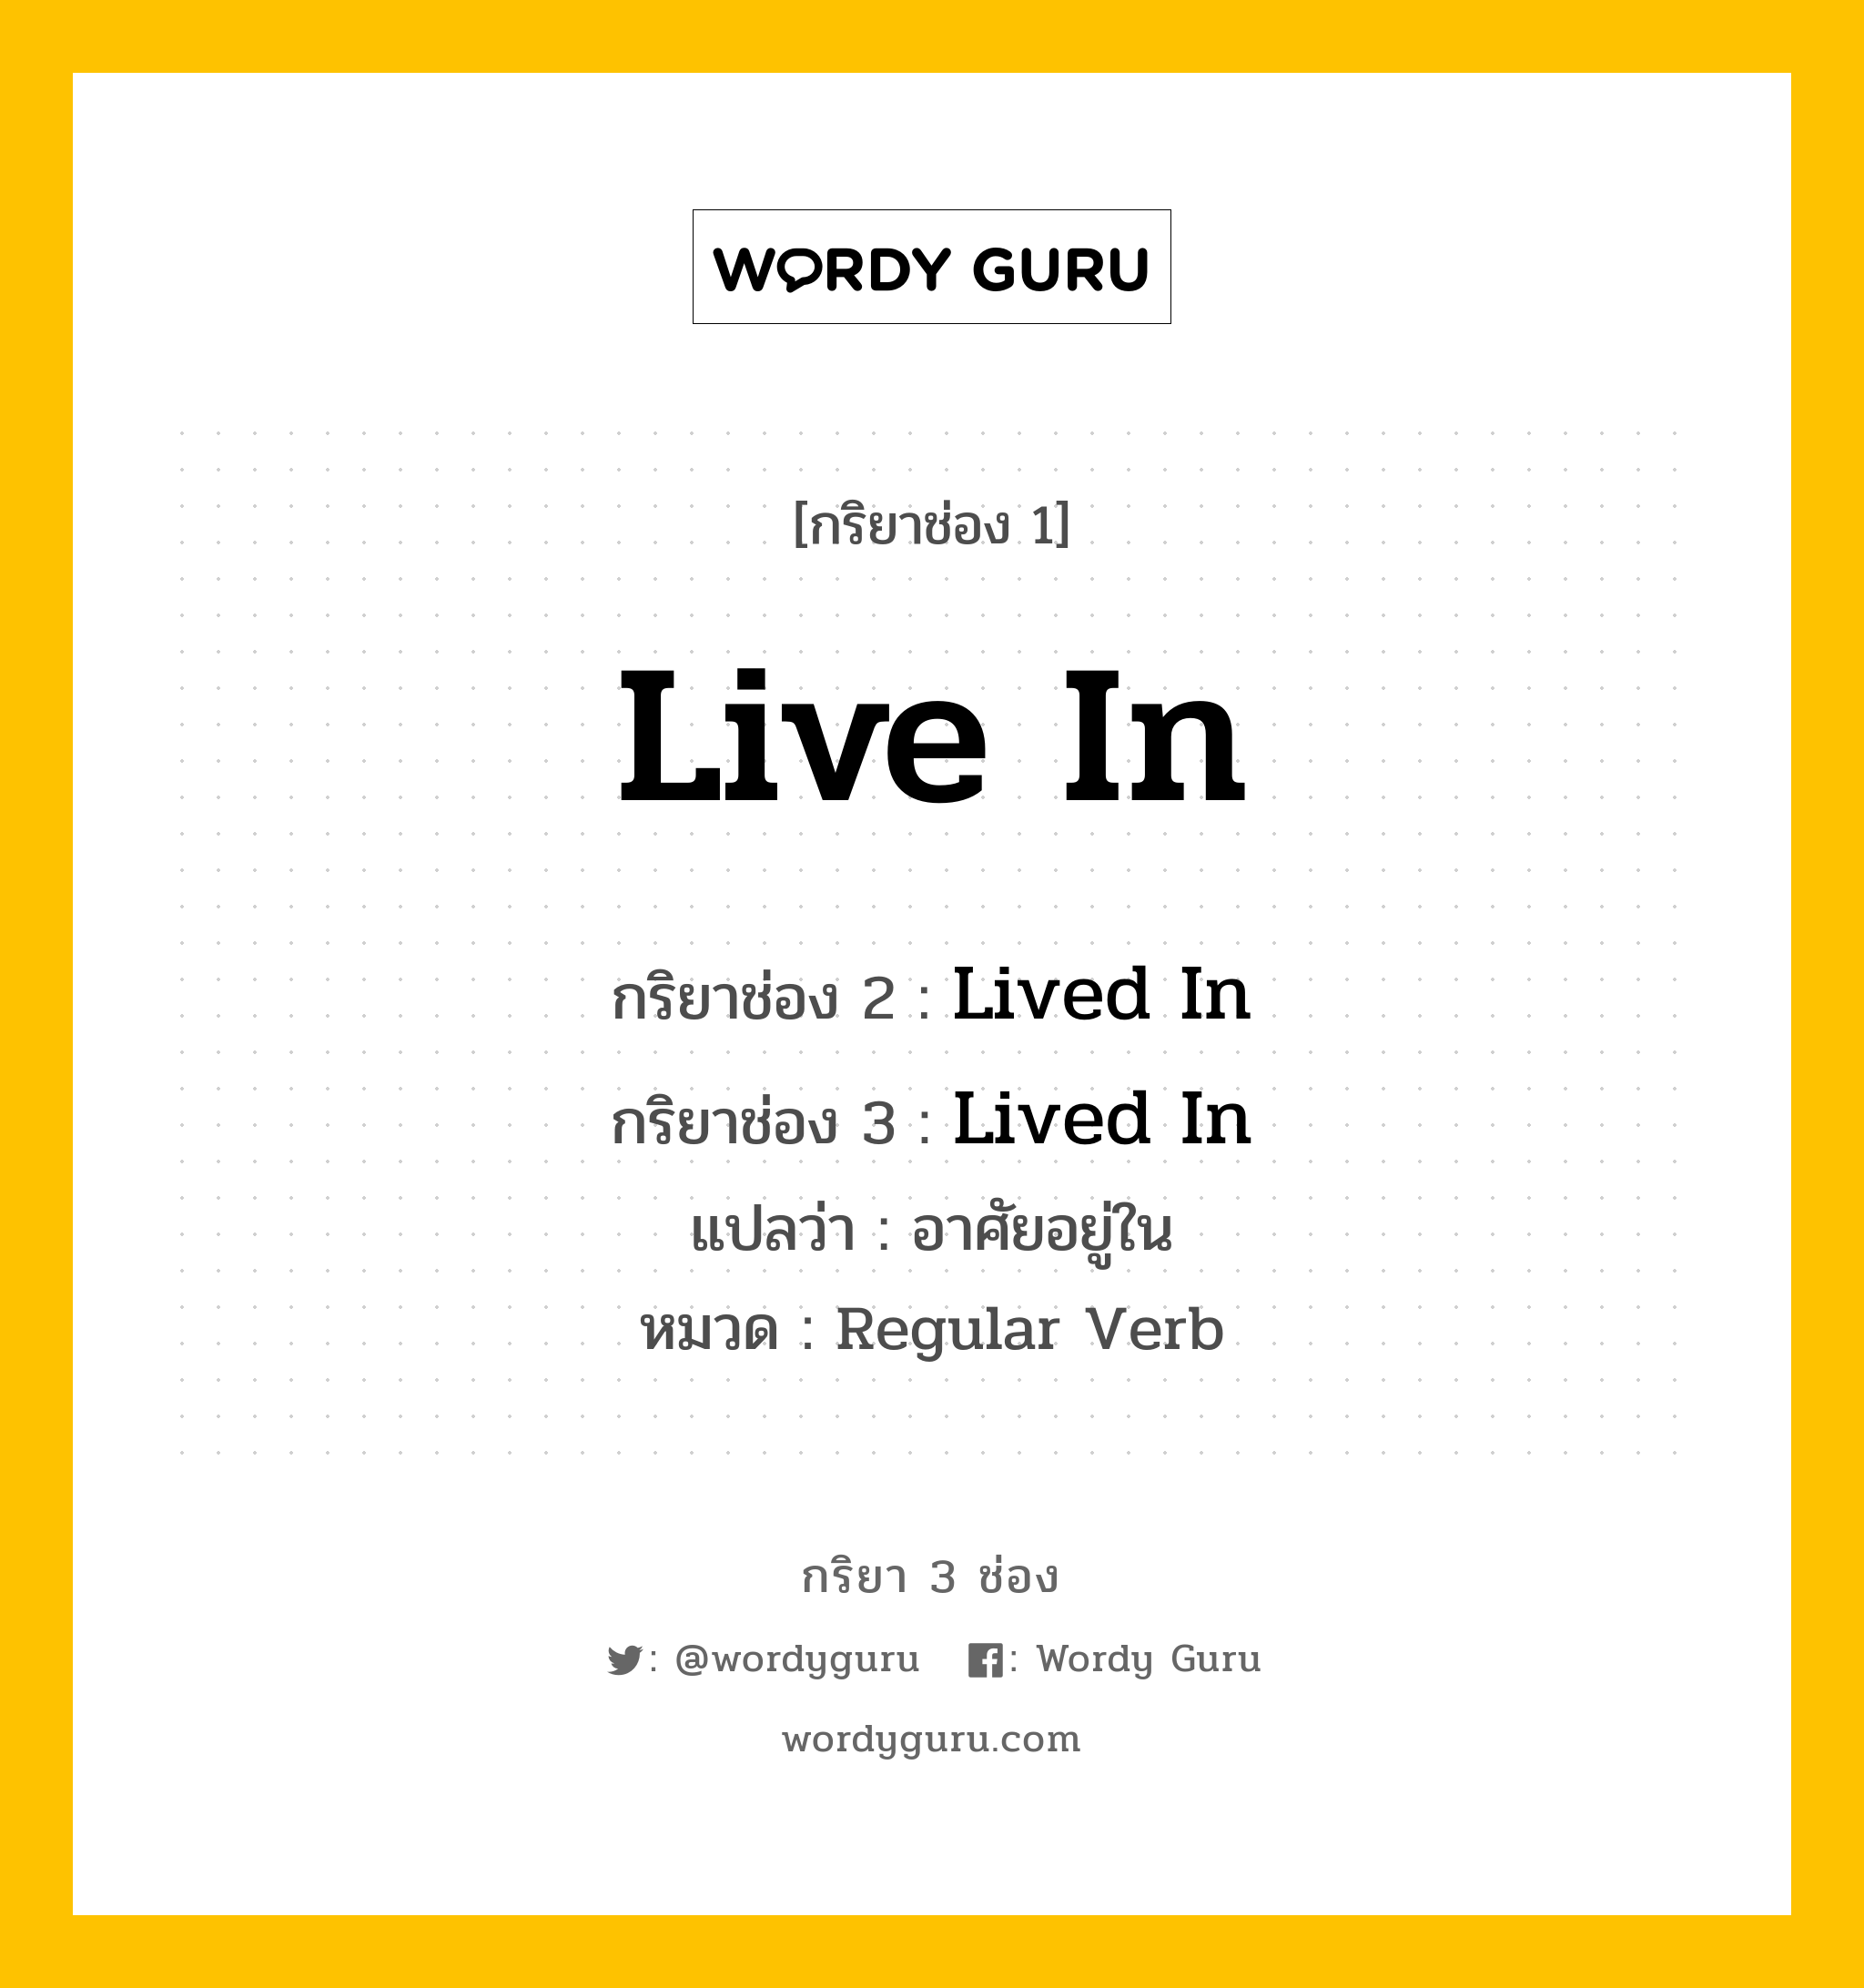 กริยา 3 ช่อง ของ Live In คืออะไร? มาดูคำอ่าน คำแปลกันเลย, กริยาช่อง 1 Live In กริยาช่อง 2 Lived In กริยาช่อง 3 Lived In แปลว่า อาศัยอยู่ใน หมวด Regular Verb หมวด Regular Verb